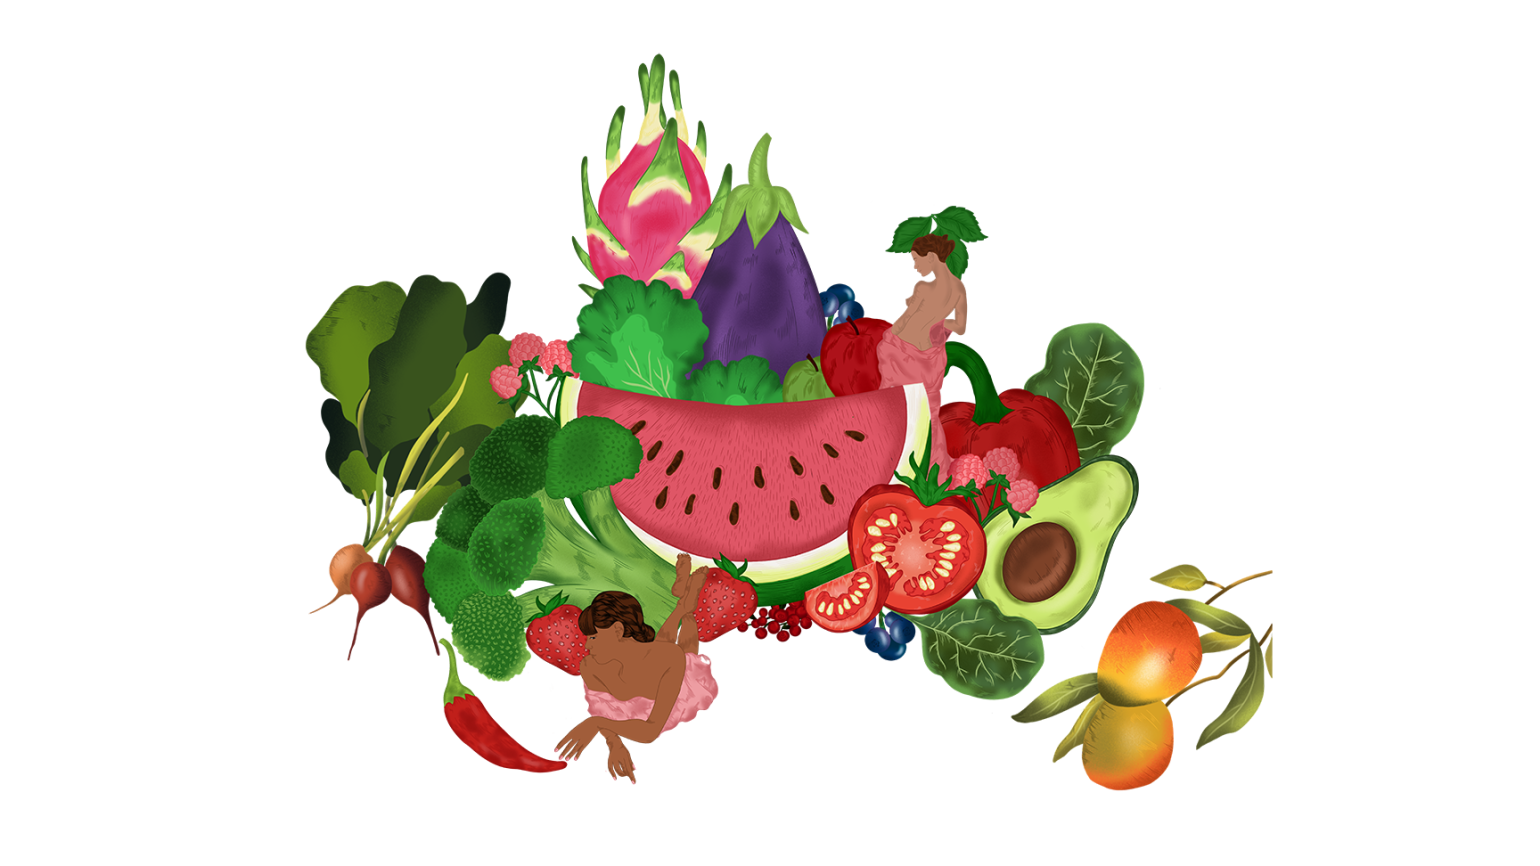 Illustrasjon av frukt og grønnsaker med innslag av kvinner